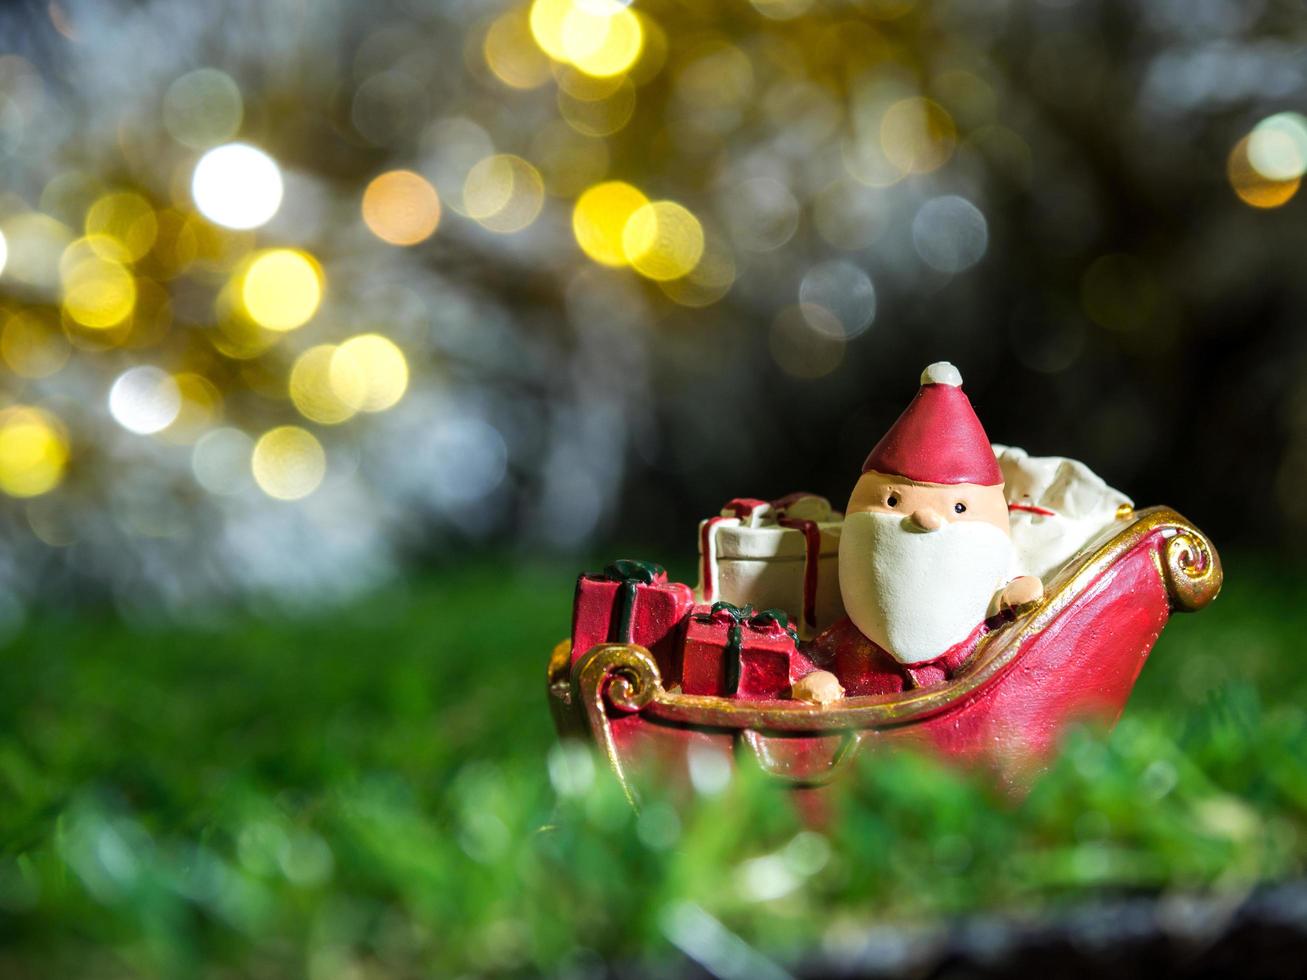 glücklicher weihnachtsmann mit geschenkbox auf dem schneeschlitten der hintergrund ist weihnachtsdekor. weihnachtsmann und weihnachtsdekor auf grünem gras. Konzept der frohen Weihnachten und des guten Rutsch ins neue Jahr foto